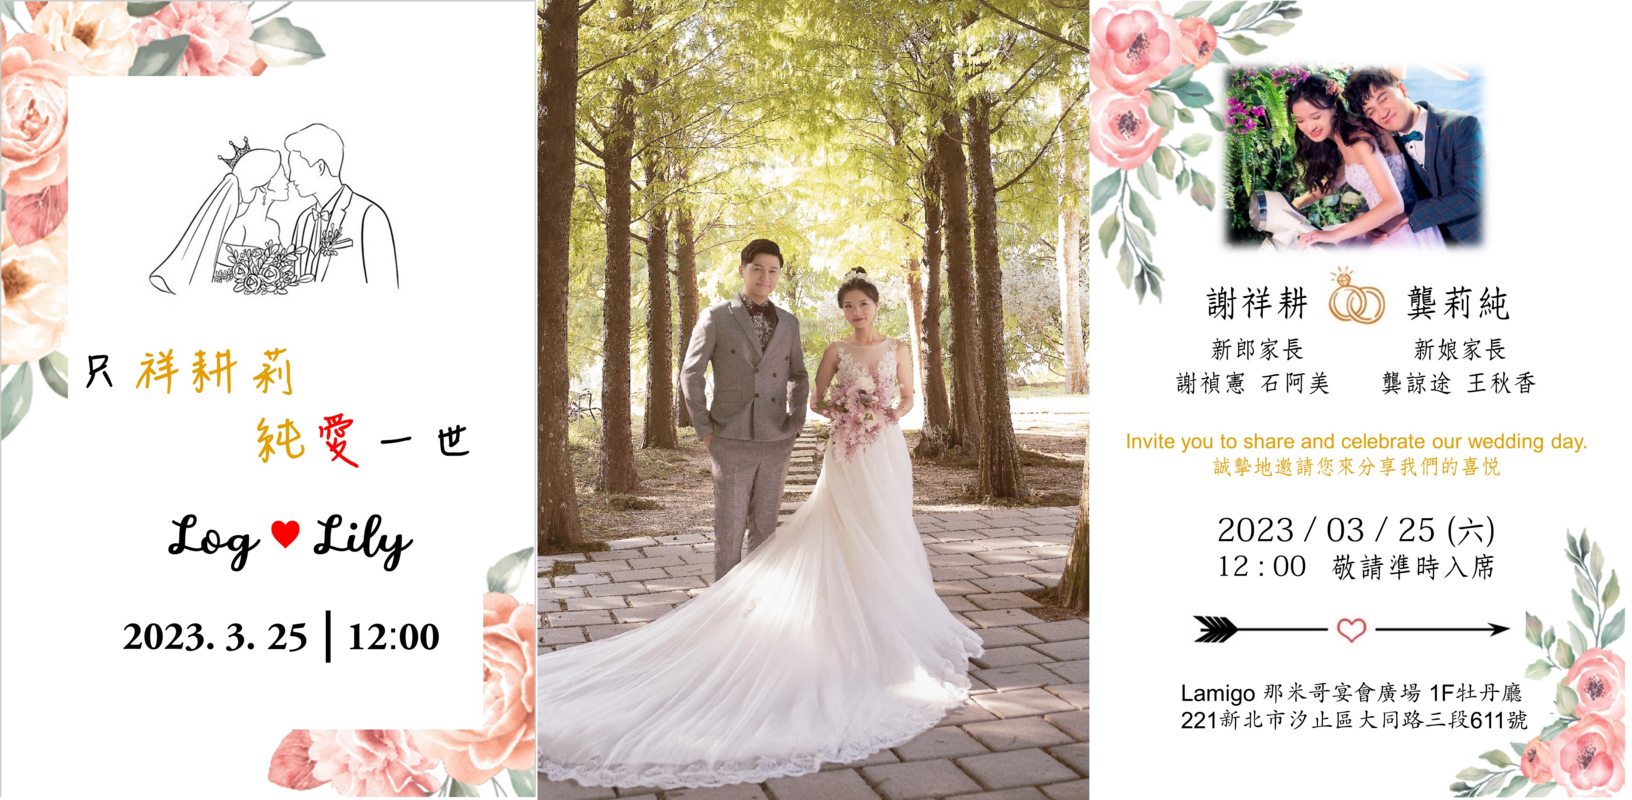 Log Hsieh Lily Kung Wedding Website là nơi đặc biệt để chia sẻ với bạn bè và người thân những thông tin quan trọng về ngày cưới của bạn. Đồng thời, website còn cung cấp cho bạn rất nhiều ý tưởng và gợi ý hay ho để thực hiện đám cưới hoàn hảo nhất. Hãy xem ngay hình ảnh liên quan để đăng ký ngay cho mình một website đẹp và hoàn toàn miễn phí.